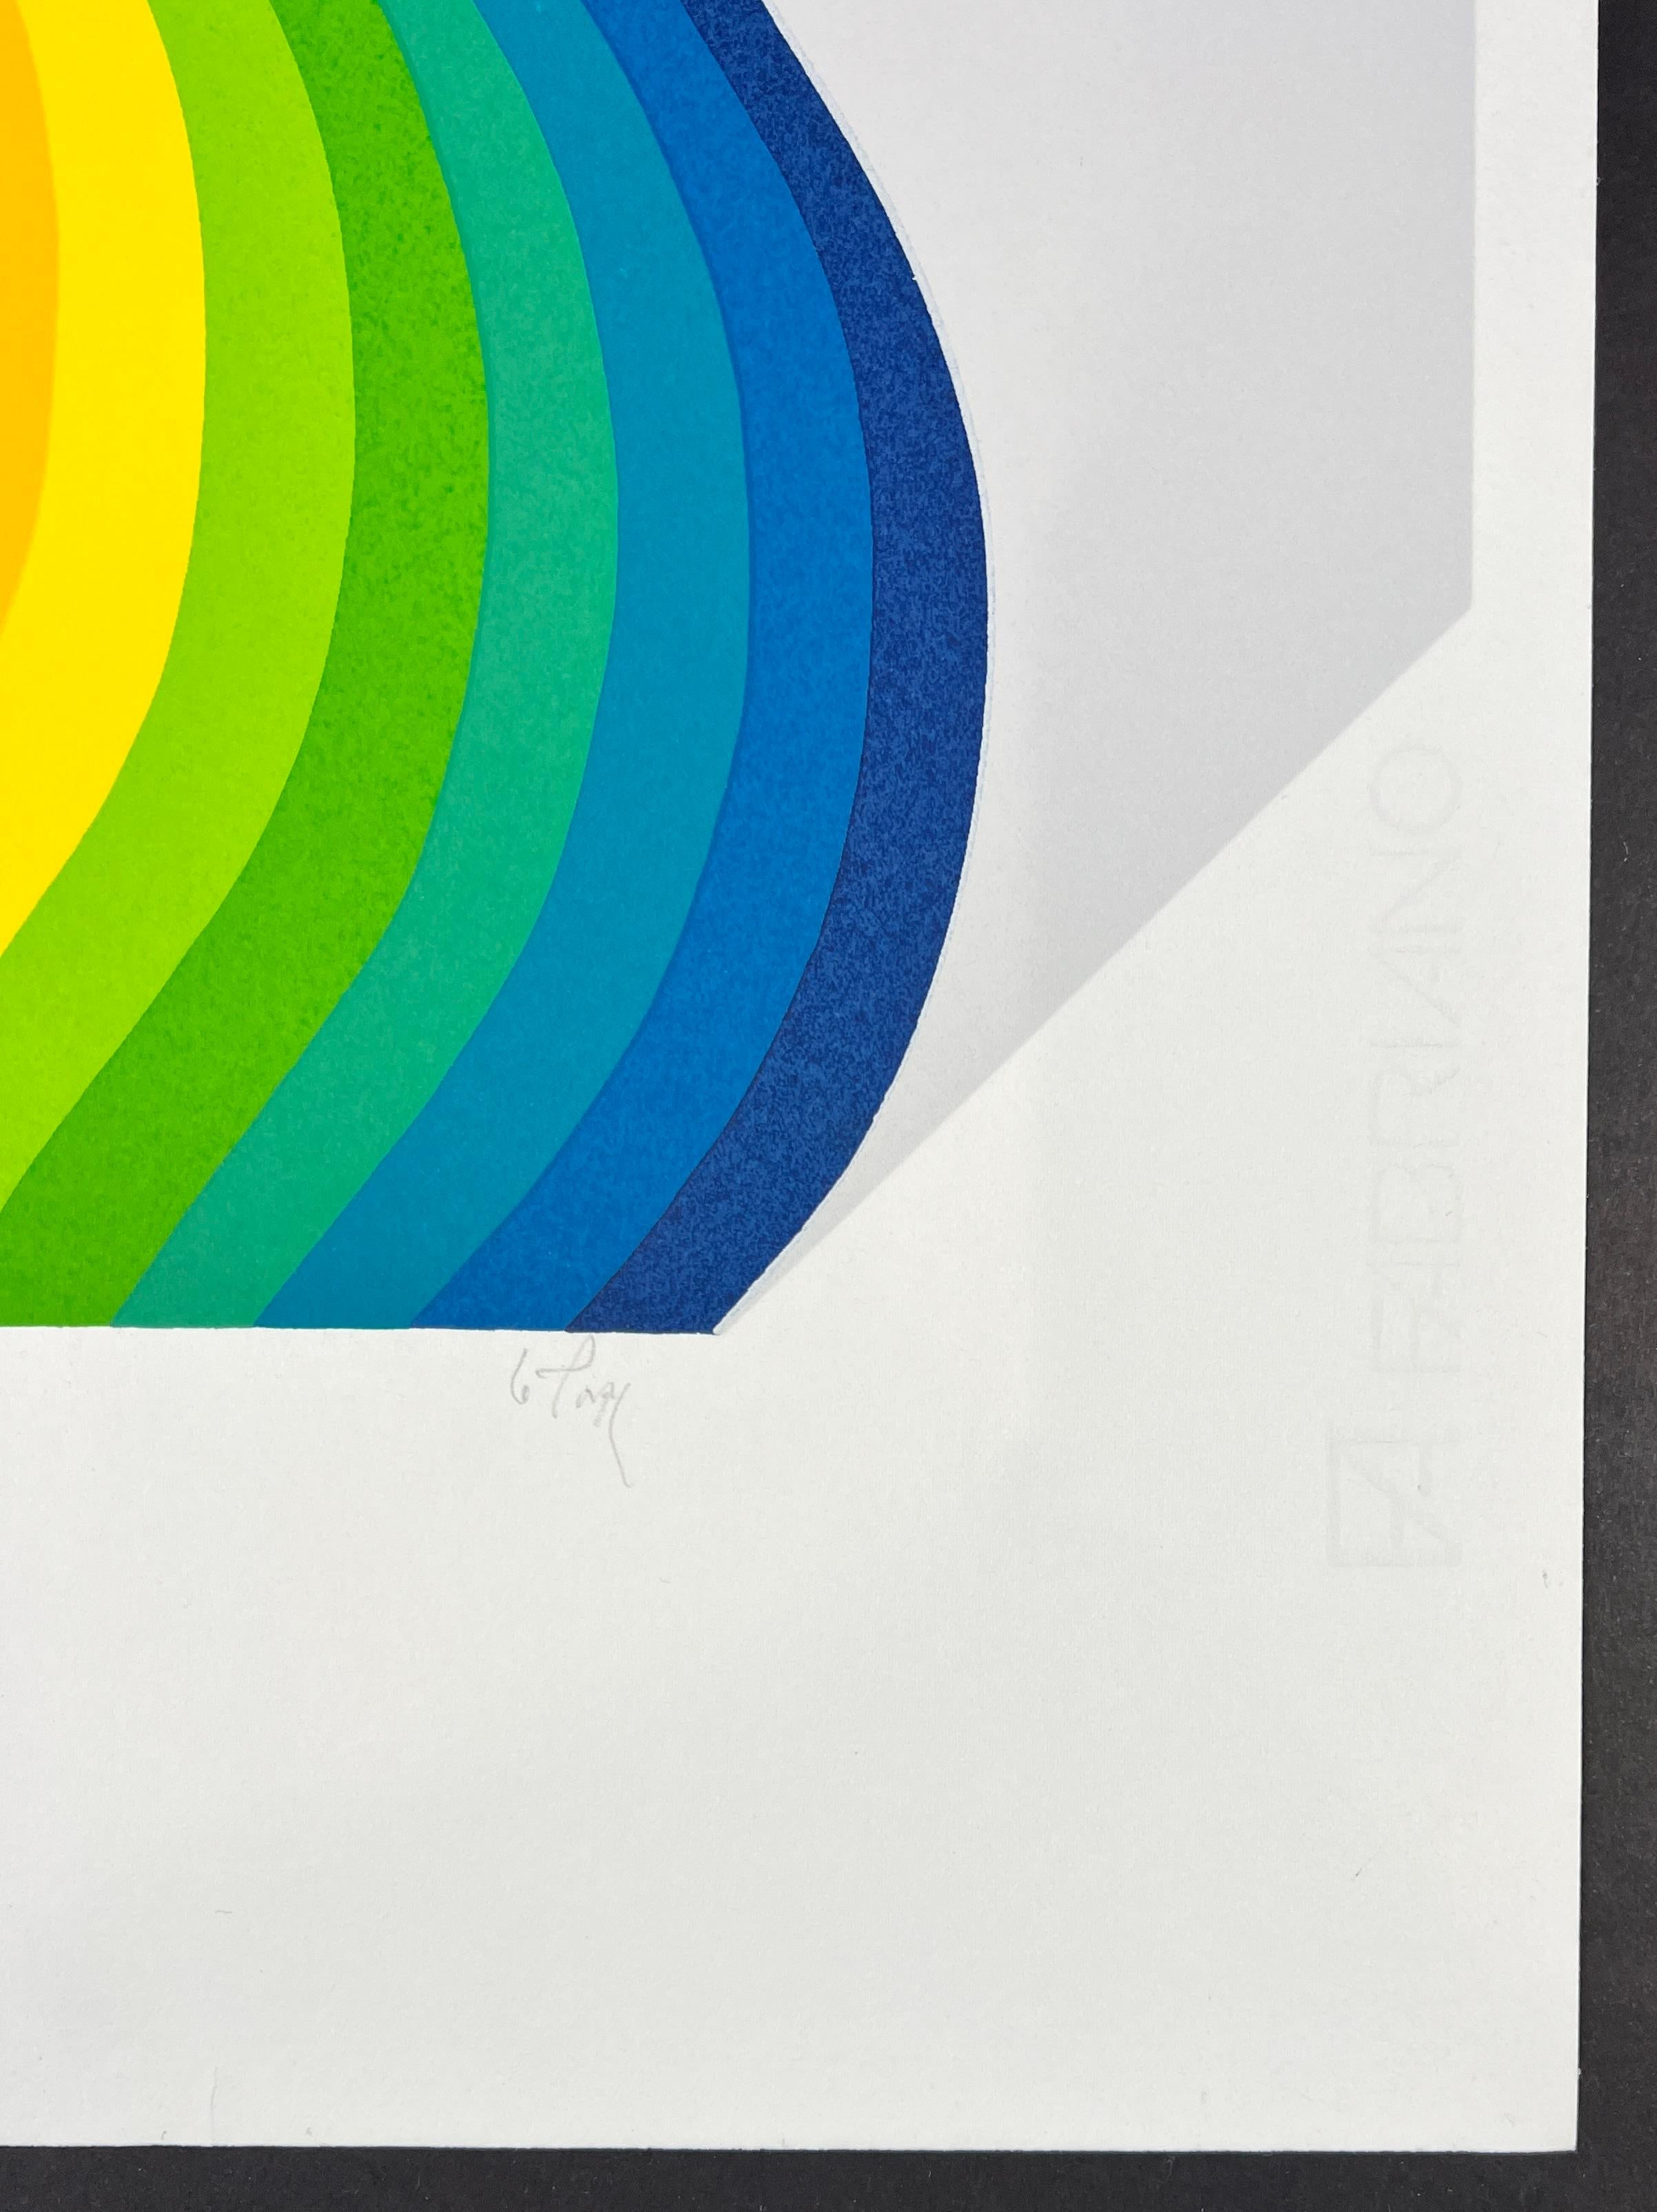 Farbserigrafie auf Fabriano-Papier, herausgegeben 1983
Limitierte Auflage von 99 Exemplaren
Vom Künstler mit Bleistift rechts unten signiert
und nummeriert EA ( artist proof ) unten links
Papierformat: 50 x 35 cm

Ausgezeichnete Bedingungen

Wir